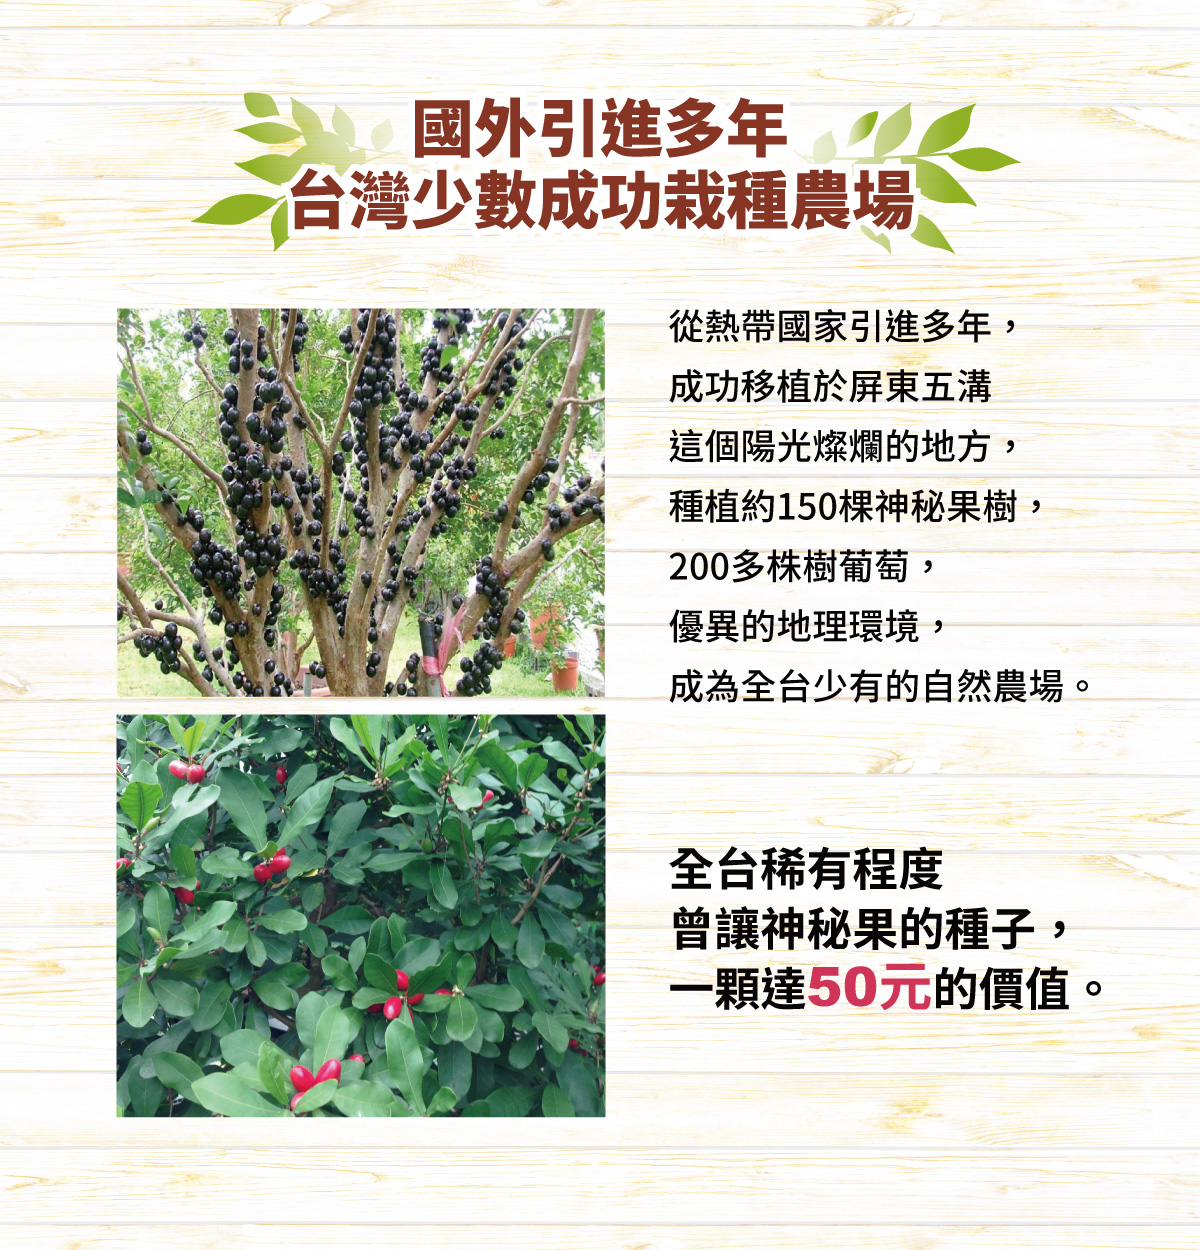 國外引進多年 台灣少數成功栽種農場